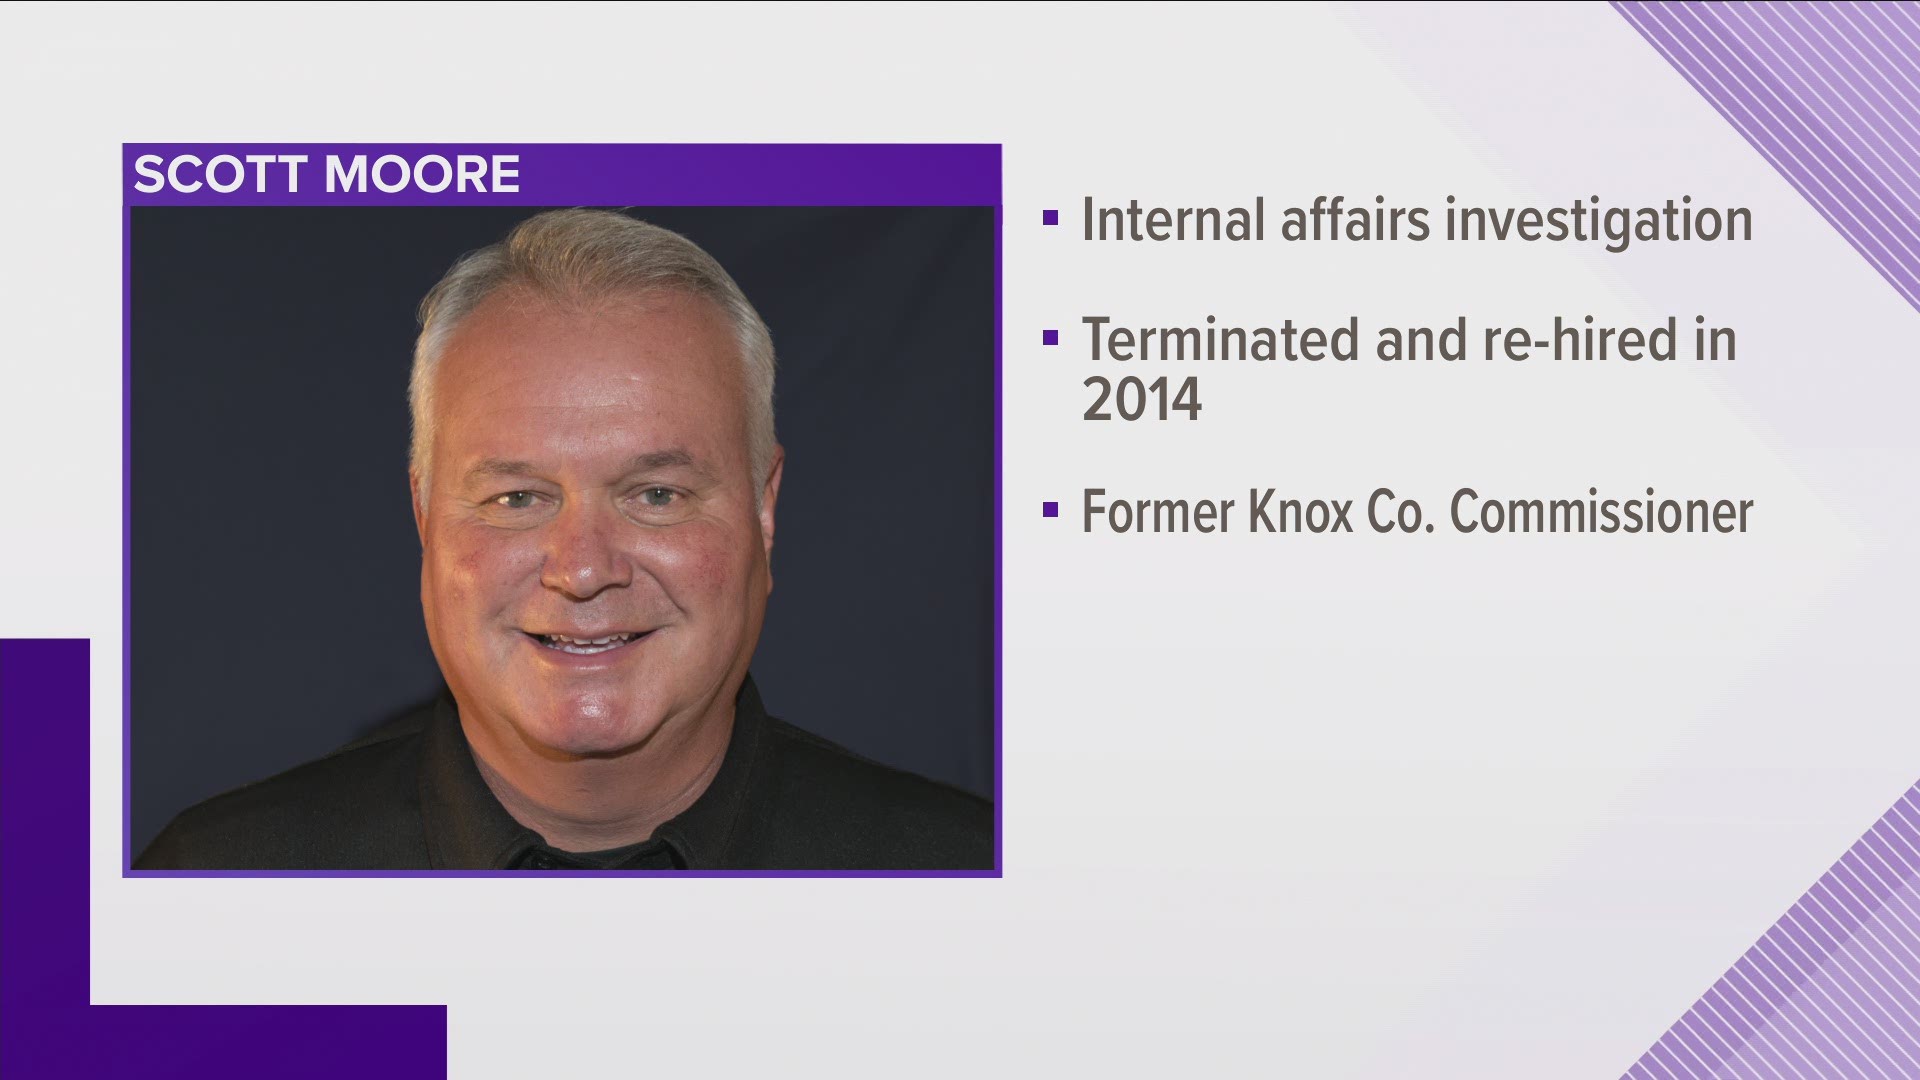 A third employee, Scott Moore, has been fired after an internal affairs investigation.